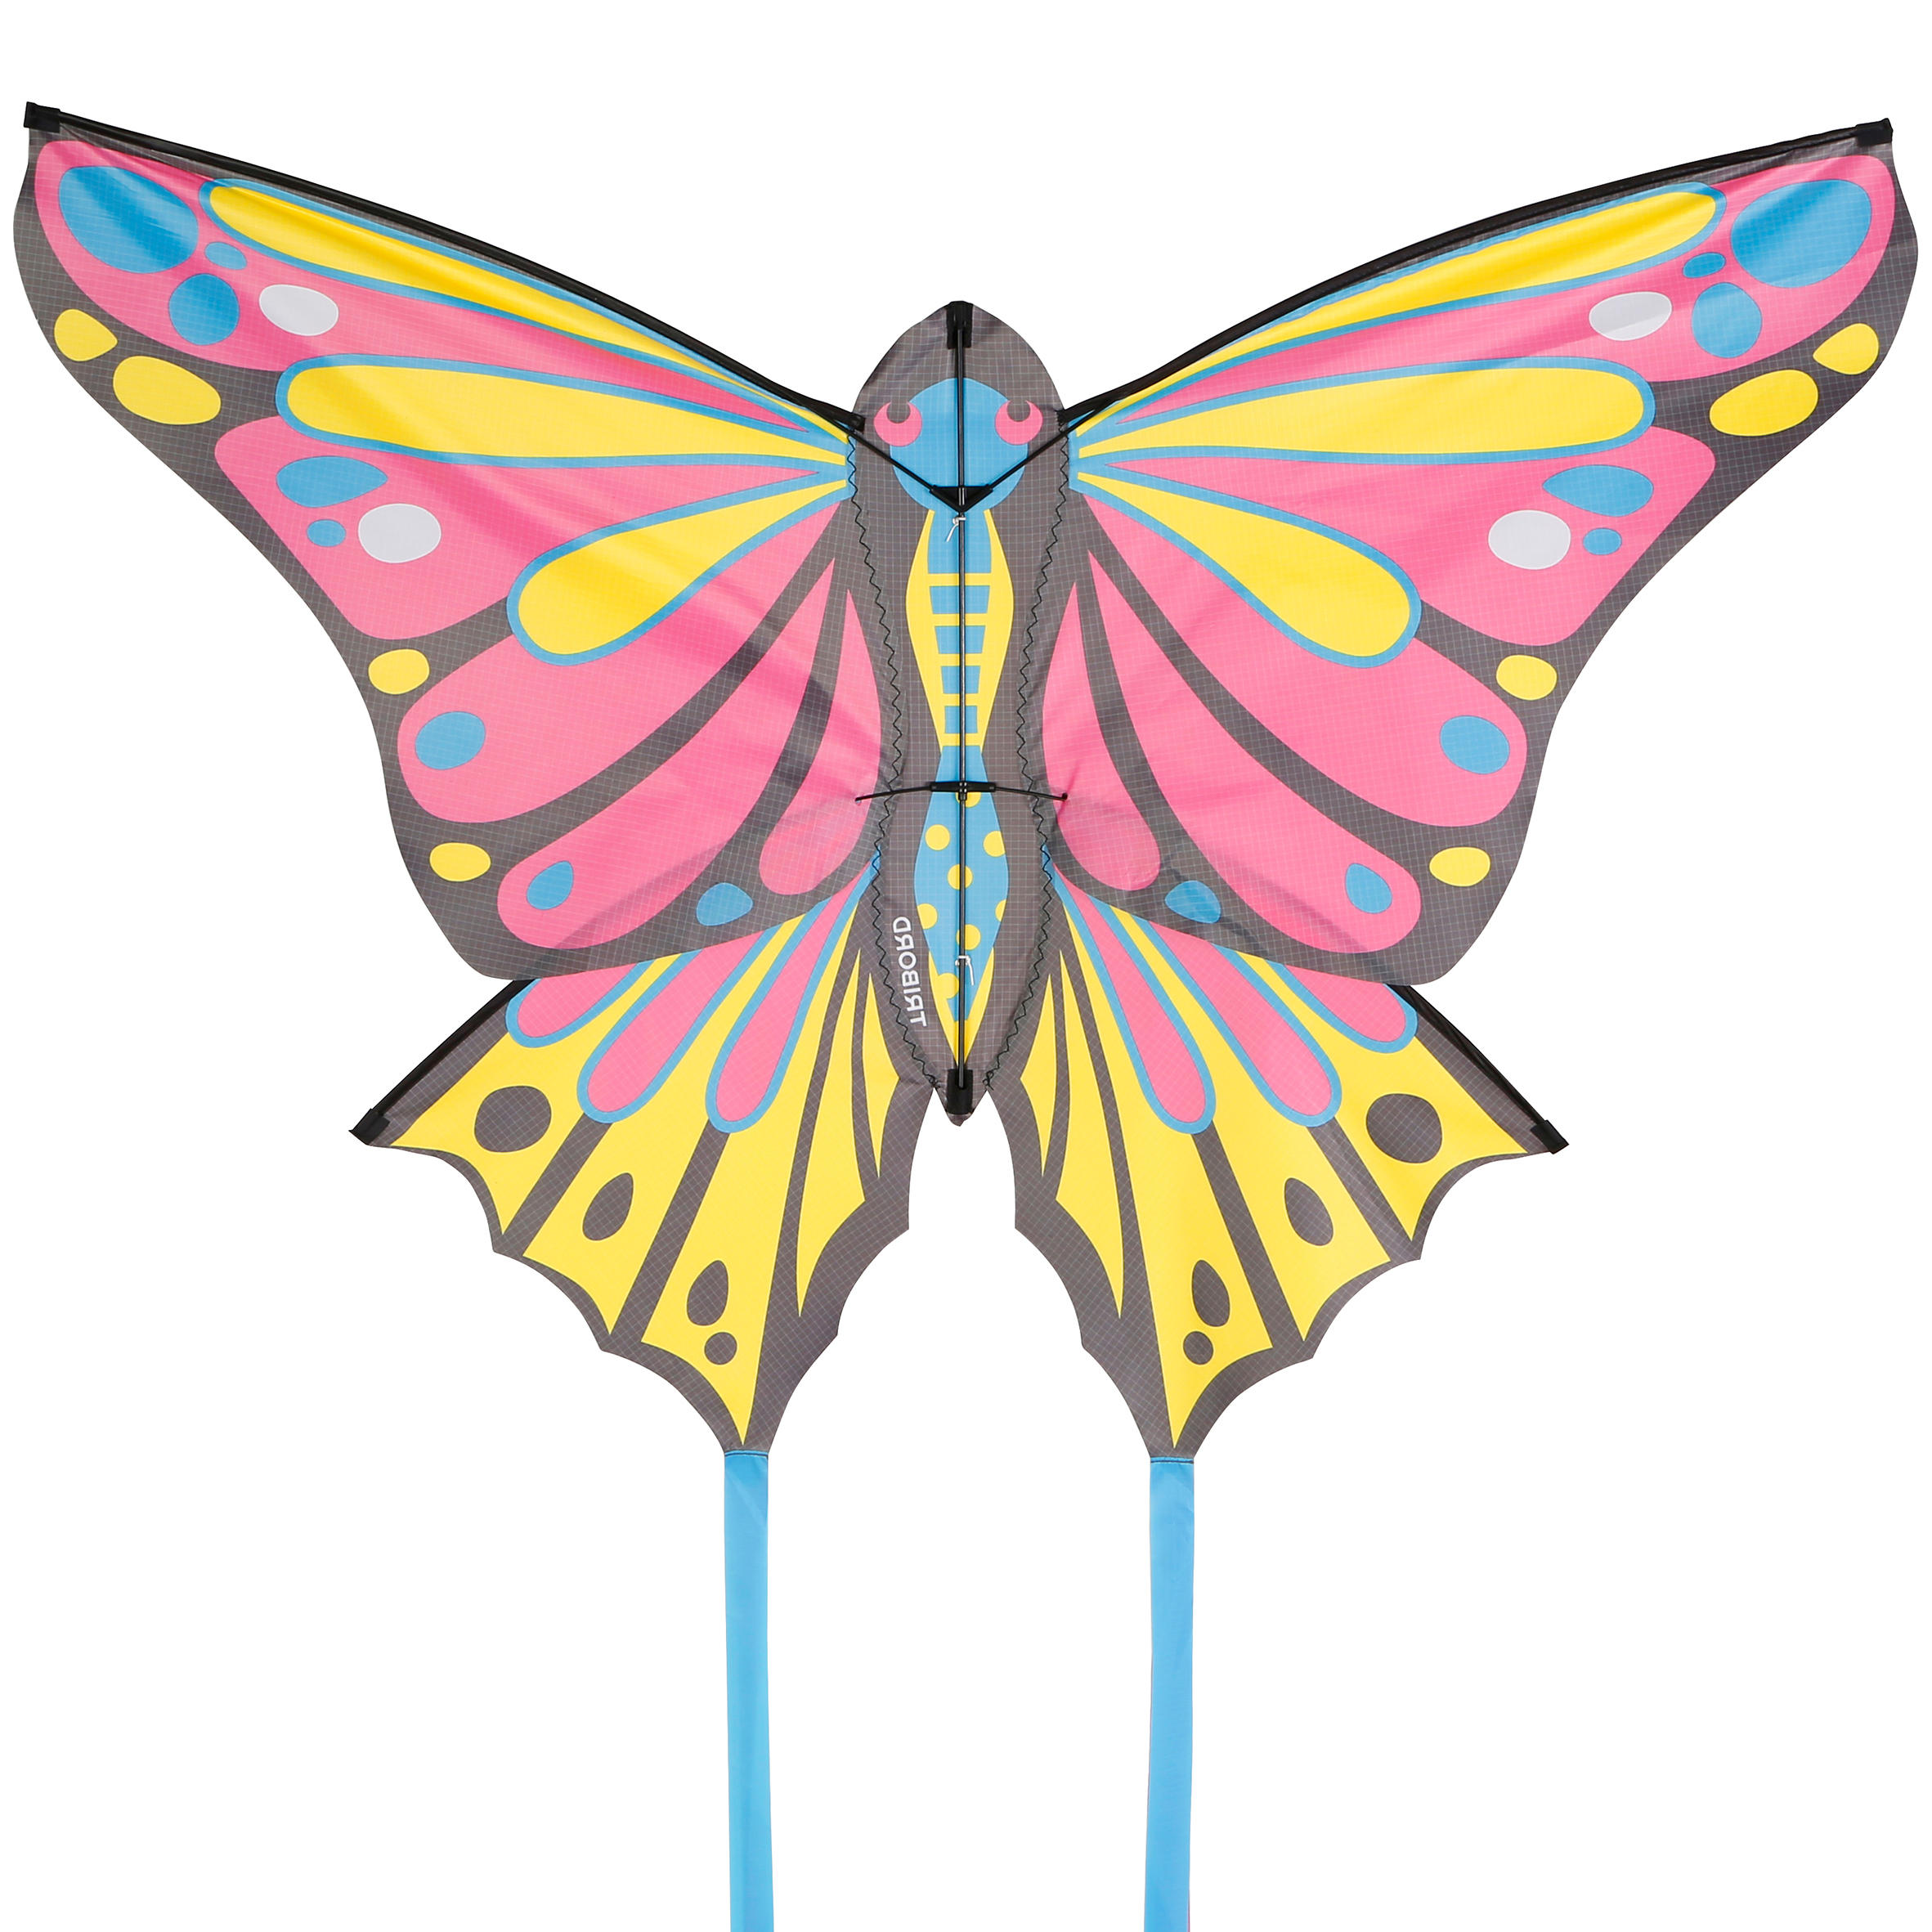 MFK 160 Static Kite - Pink/Yellow 5/17